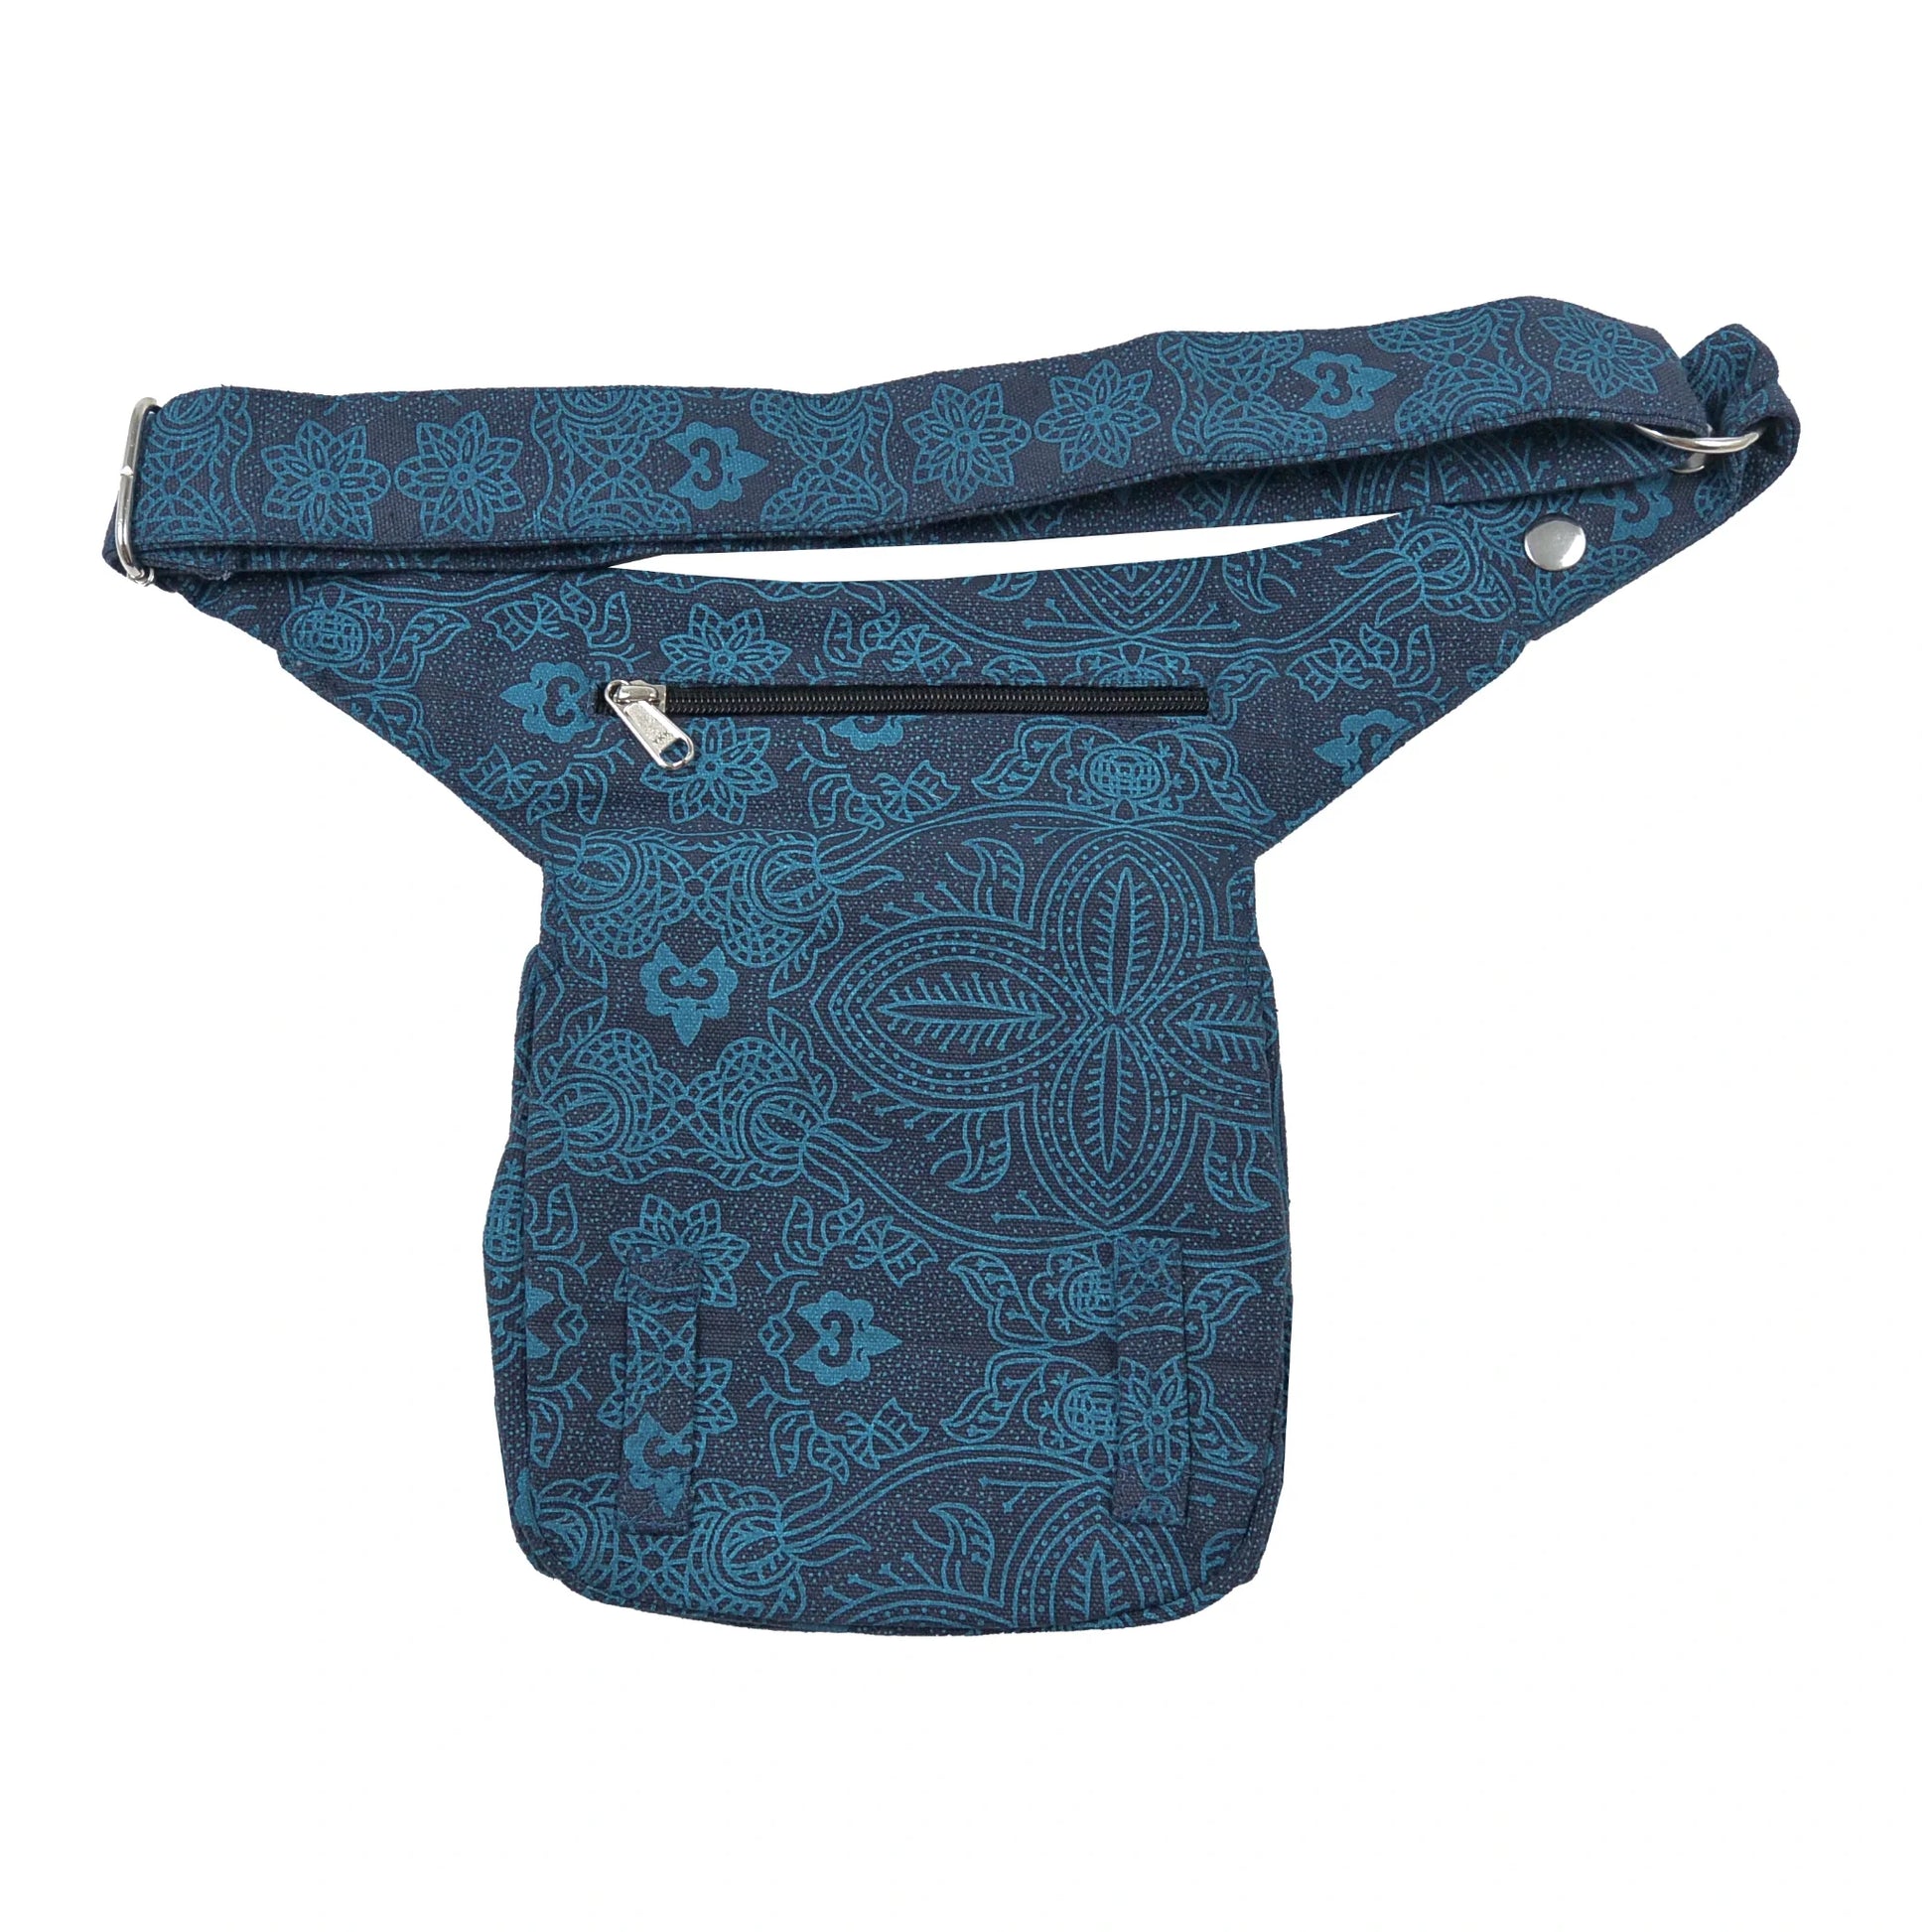 Bauchtasche Hüfttasche Stoff Baumwolle in Dunkelblau mit Ornamenten und Blumenmuster Mix mit Reißverschlussfach auf der hinteren Seite.